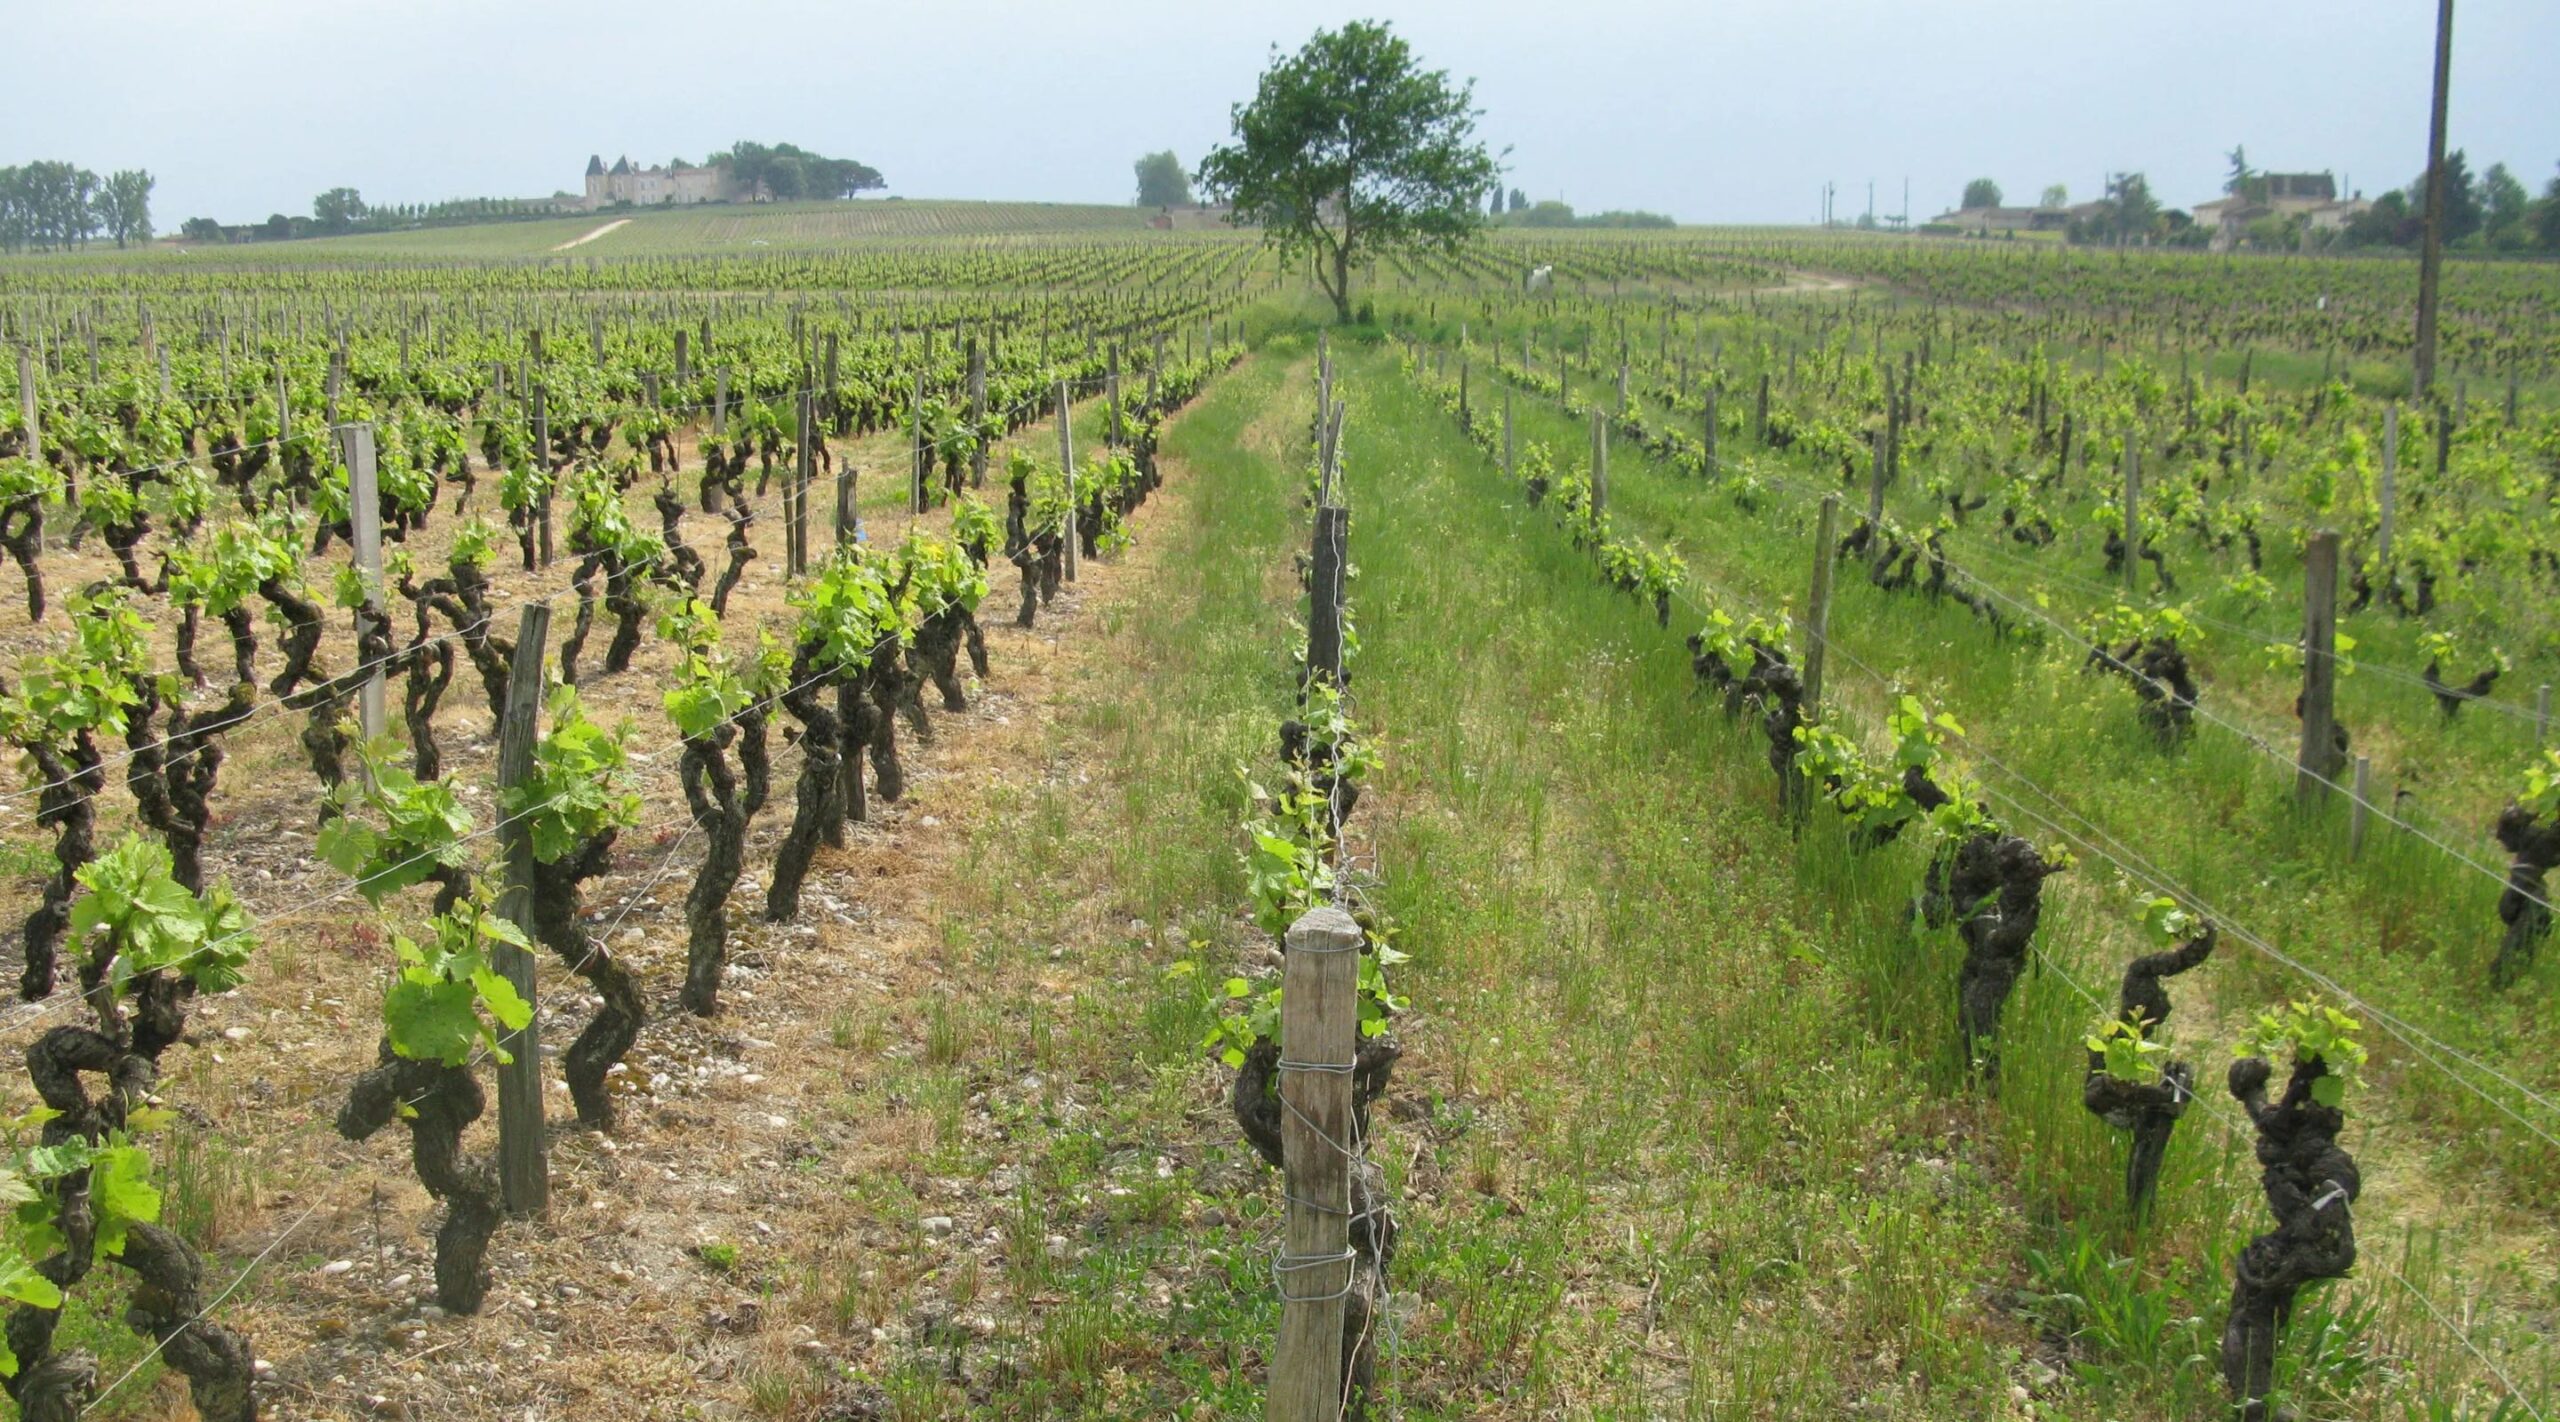 Cru d'Arche Pugneau vineyard